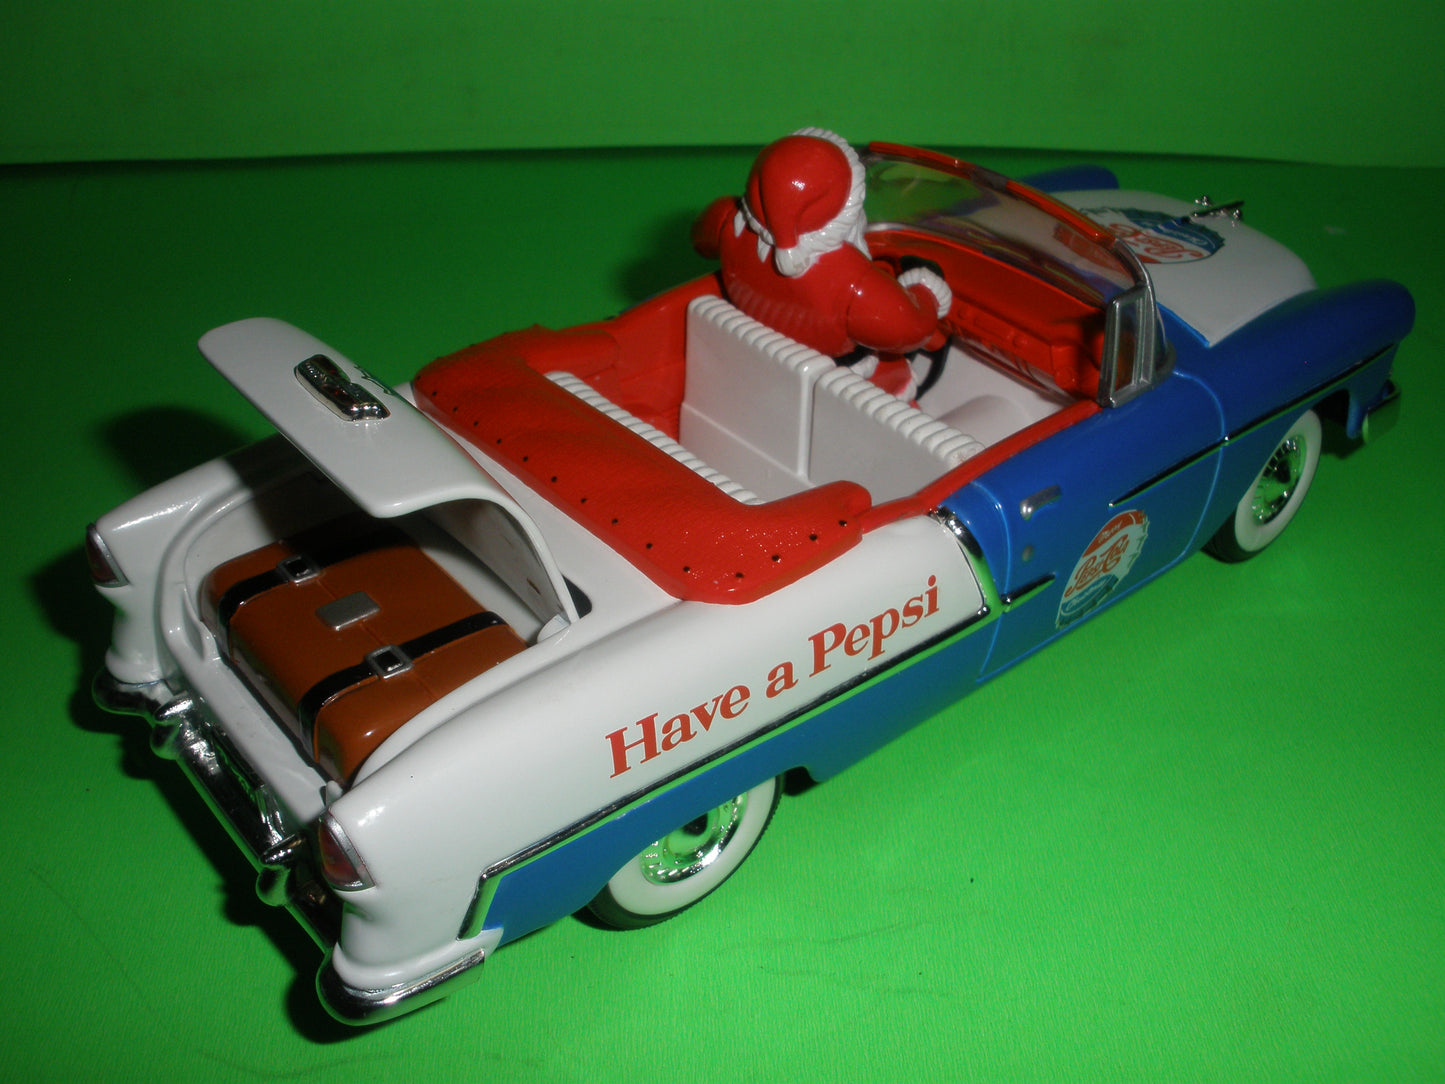 Pepsi 1955 Chevrolet Bel-Air Convertible with Santa